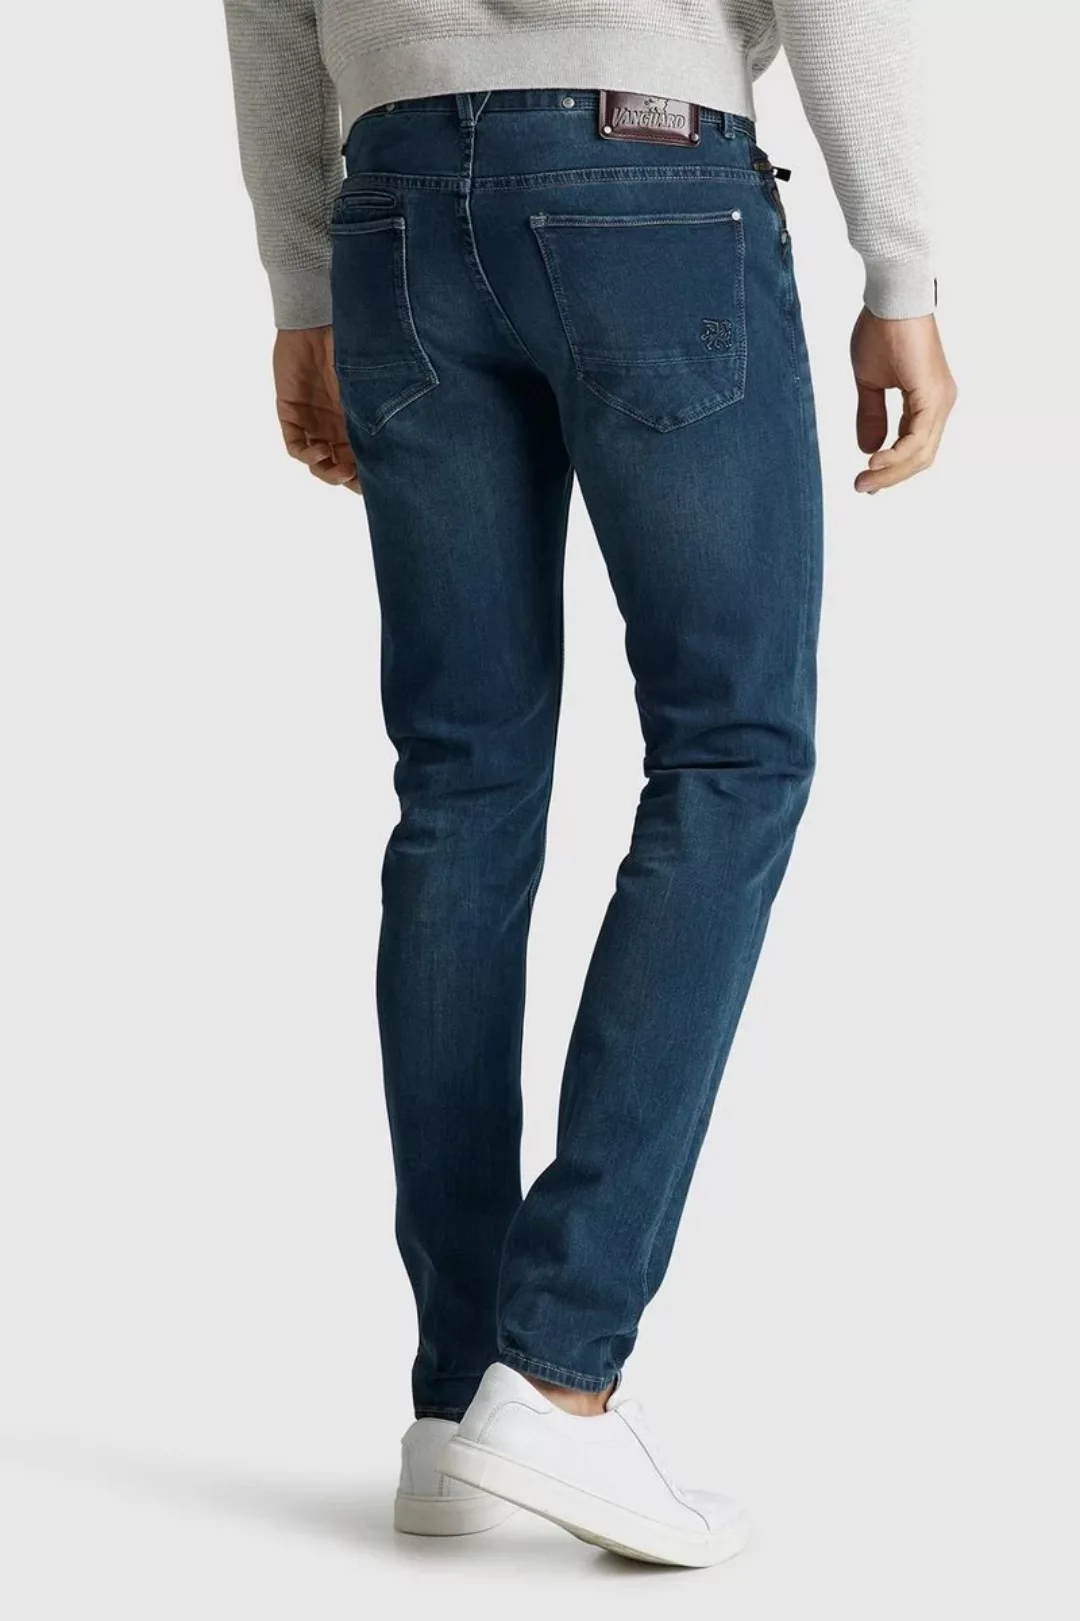 Vanguard V850 Rider Jeans Washed - Größe W 36 - L 32 günstig online kaufen